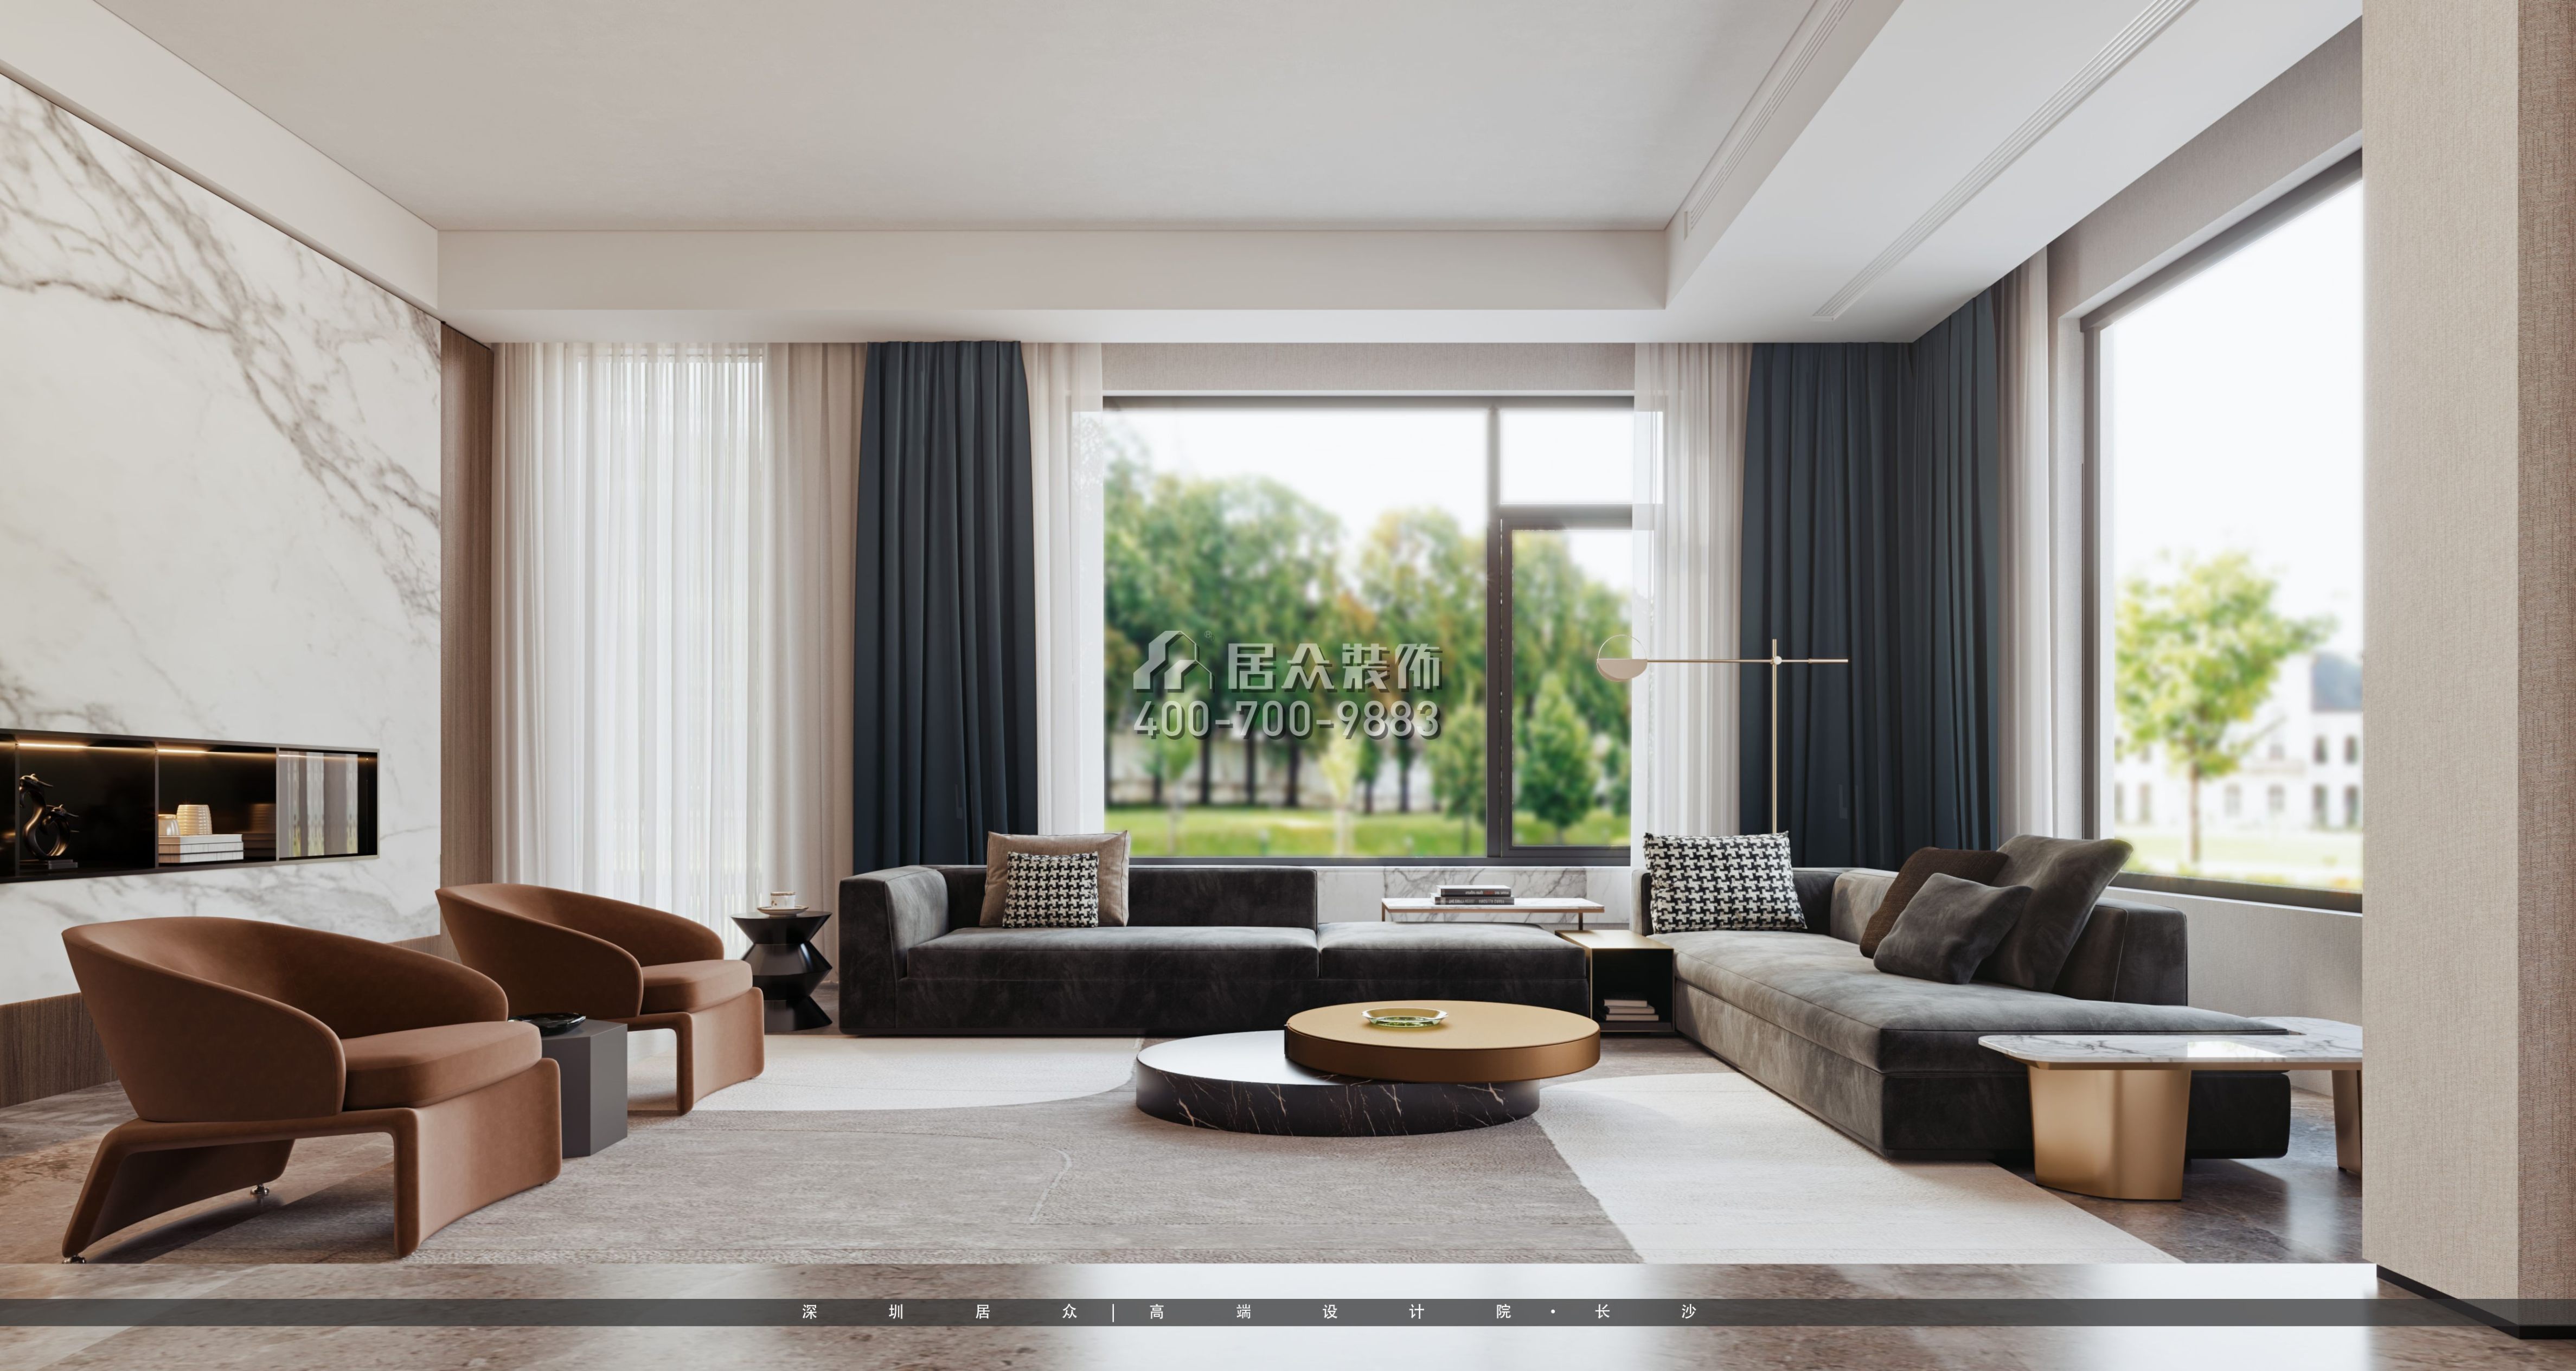 龍湖560平方米現代簡約風格別墅戶型客廳裝修效果圖